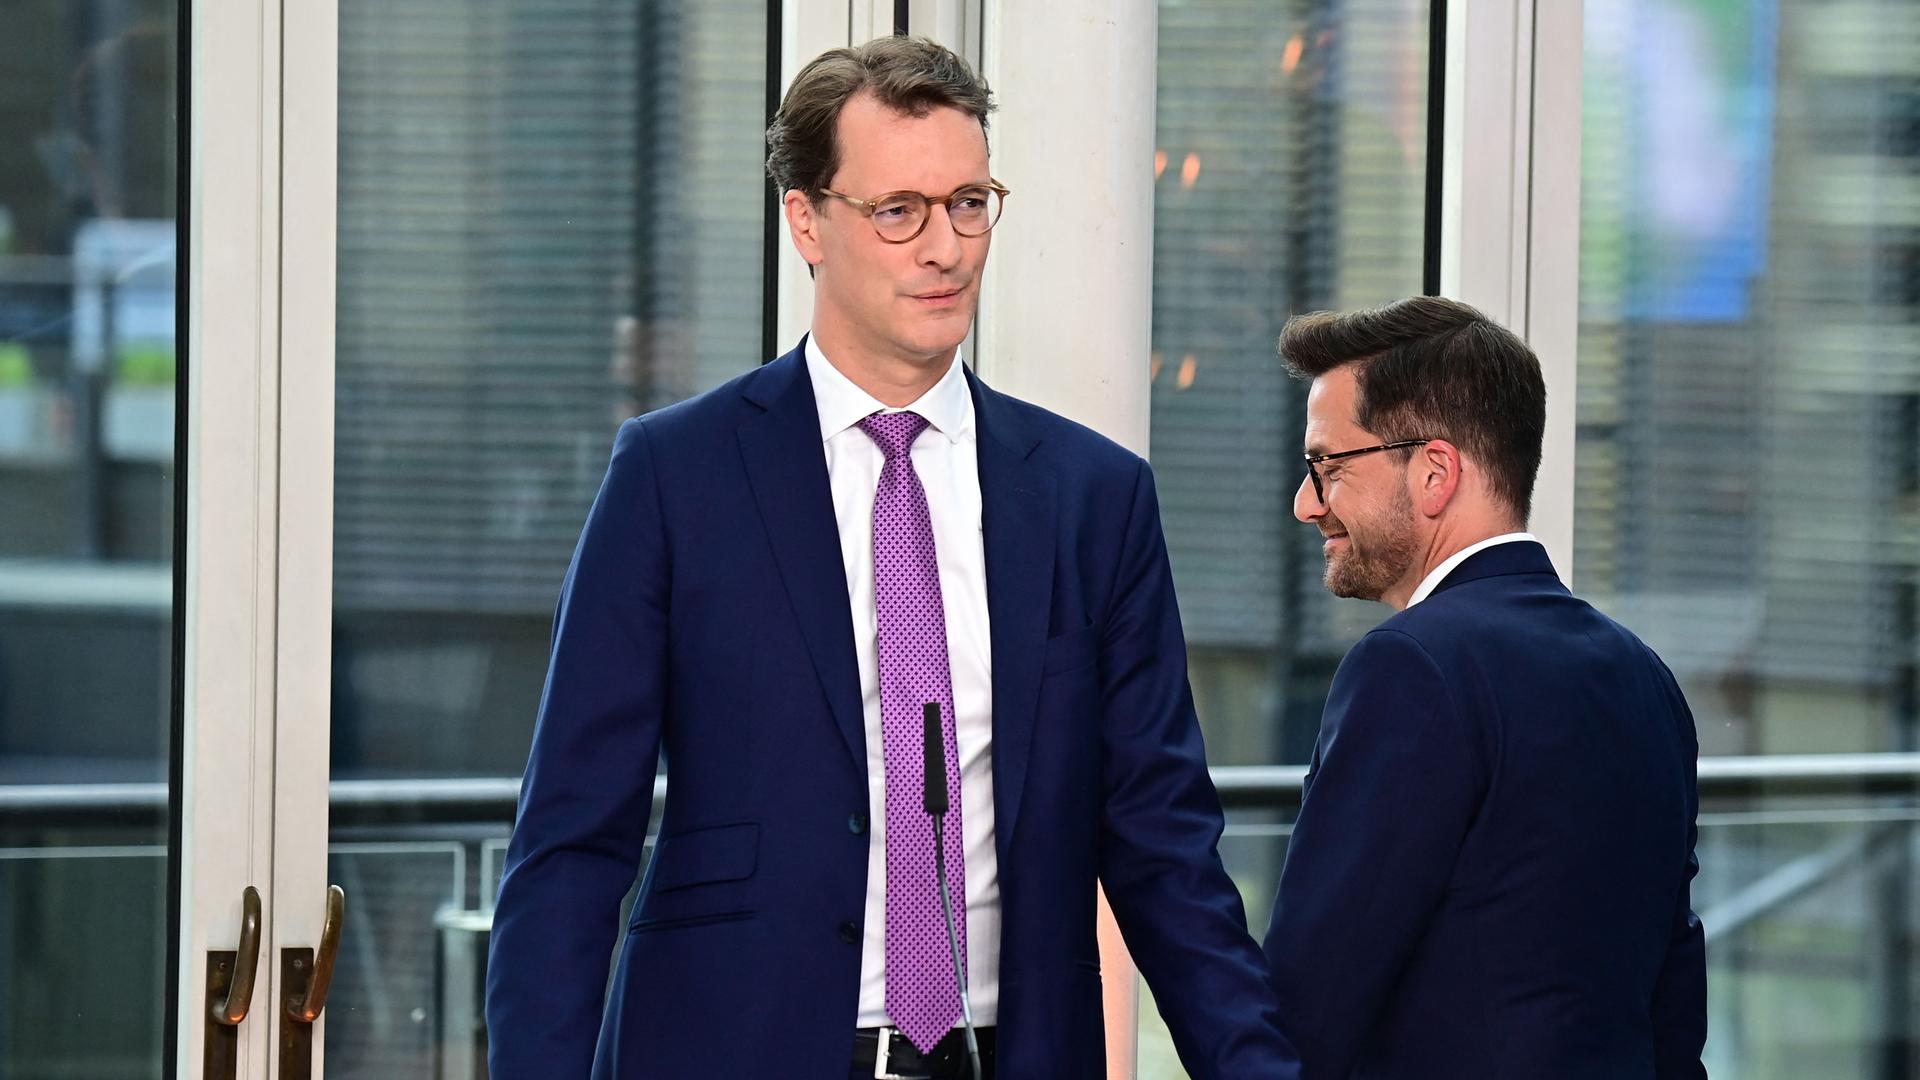 Der Ministerpräsident von Nordrhein-Westfalen, Wüst (CDU), und der SPD-Spitzenkandidat für die Landtagswahl, Kutschaty, am Wahlabend in einer Fernsehrunde.